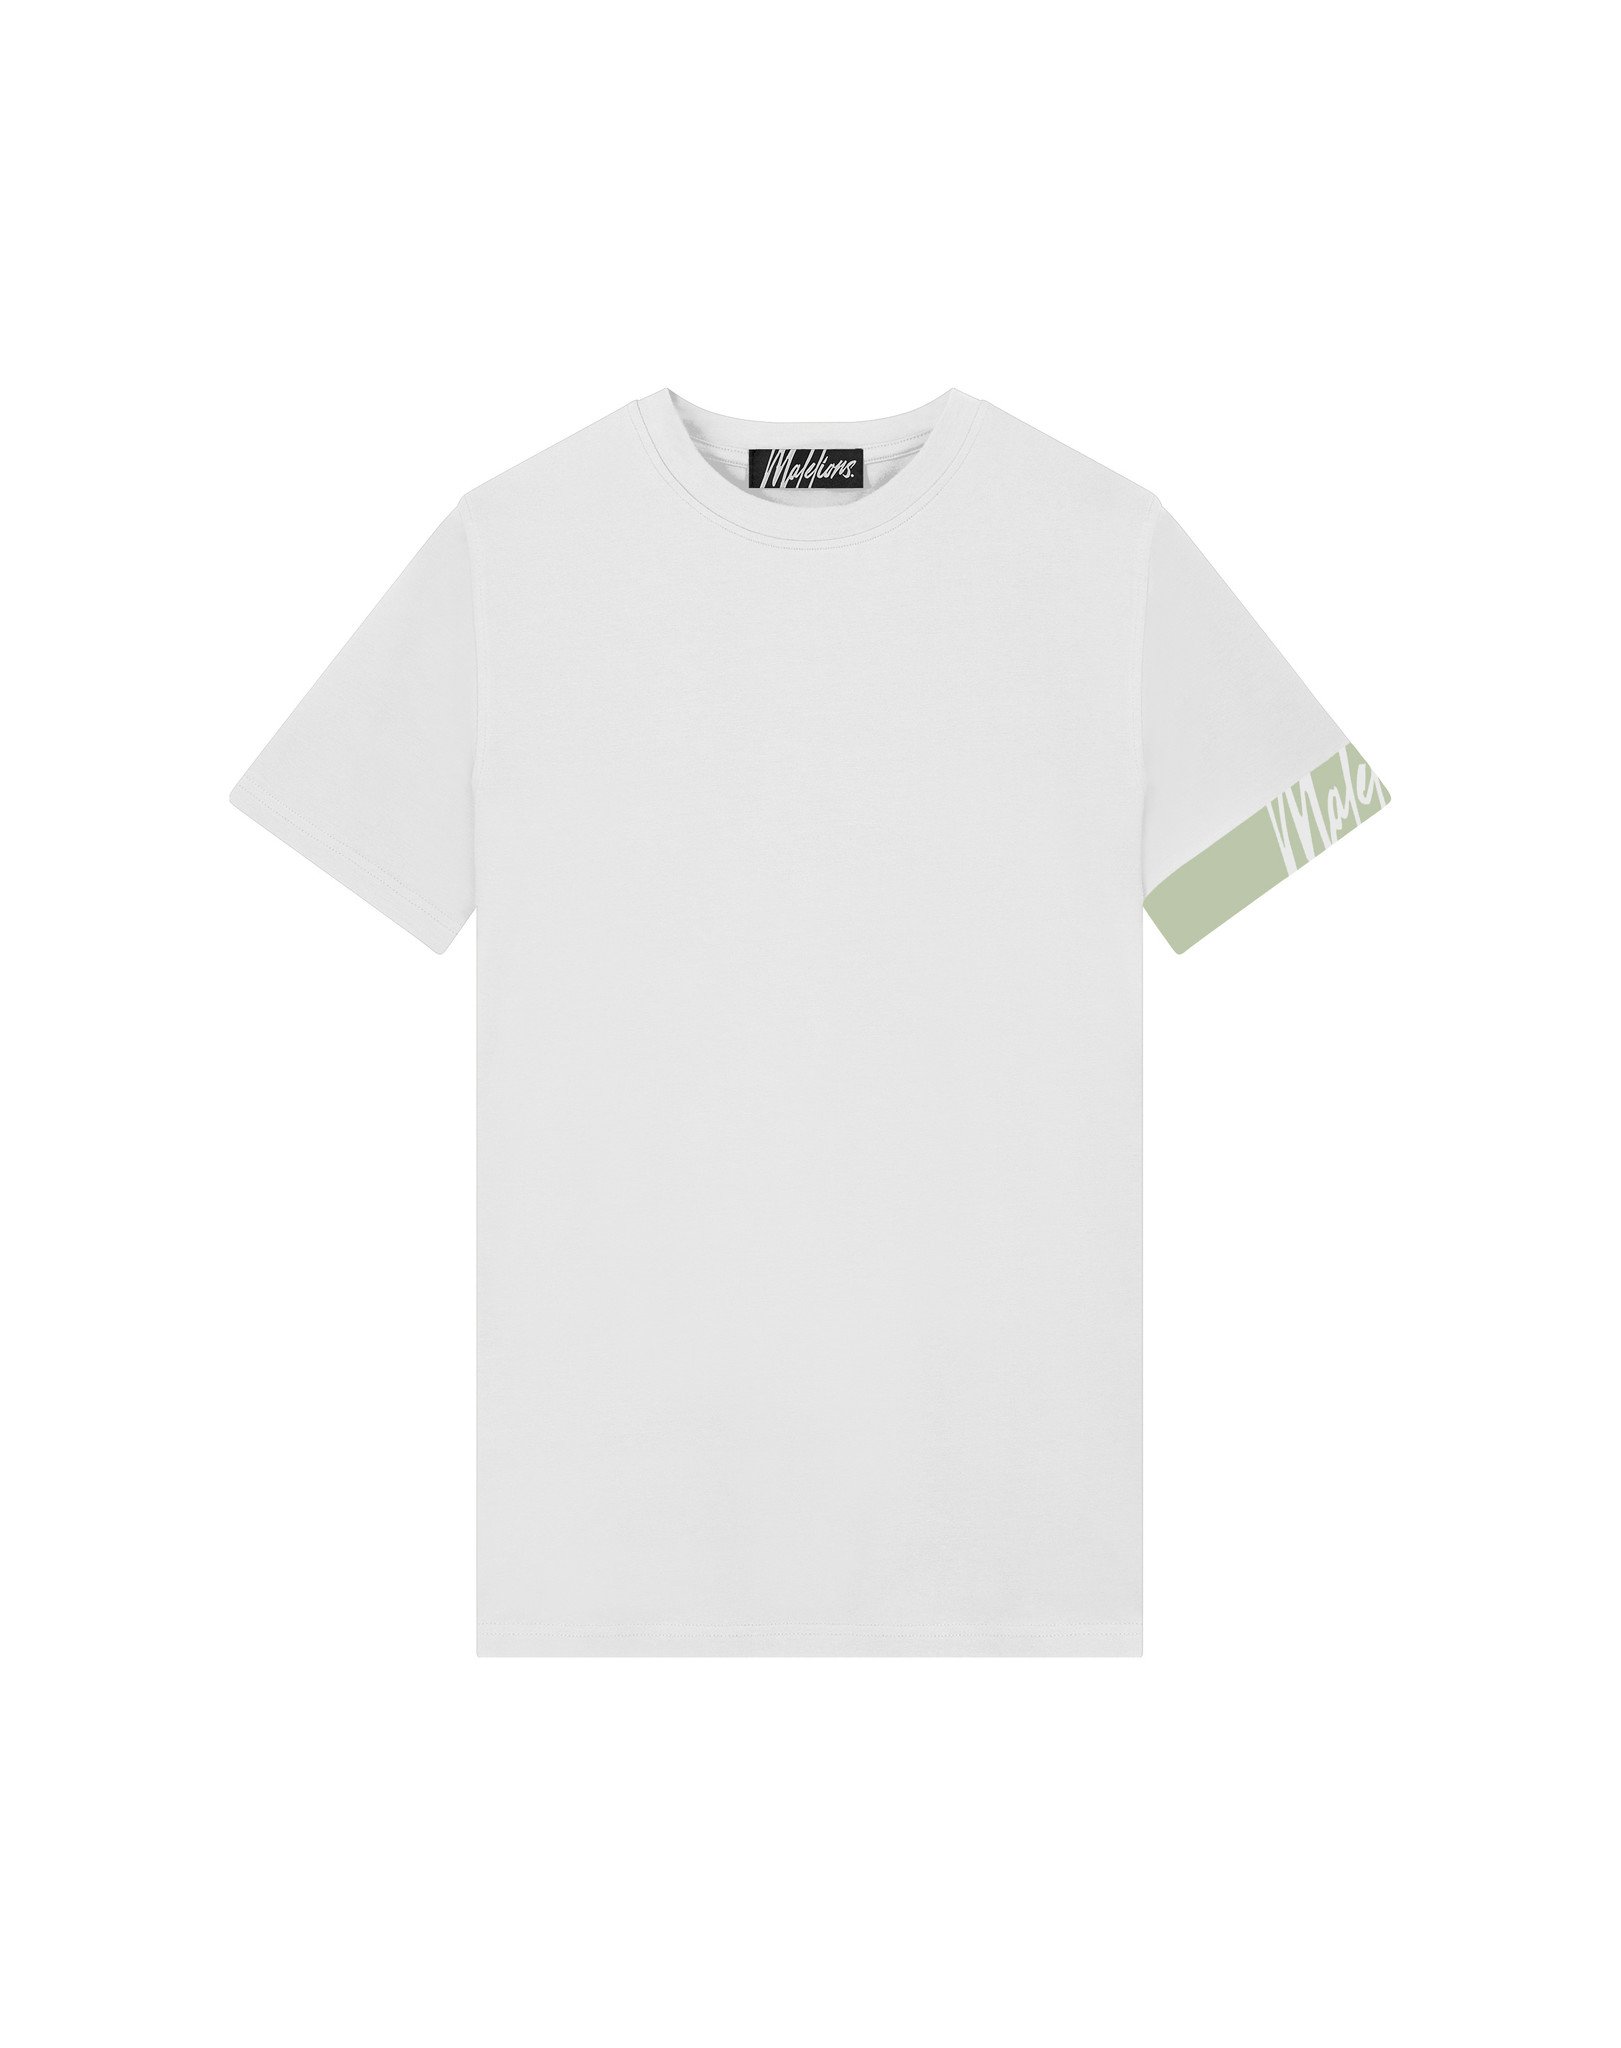 Malelions Men Captain T-Shirt 2.0 - White/Green